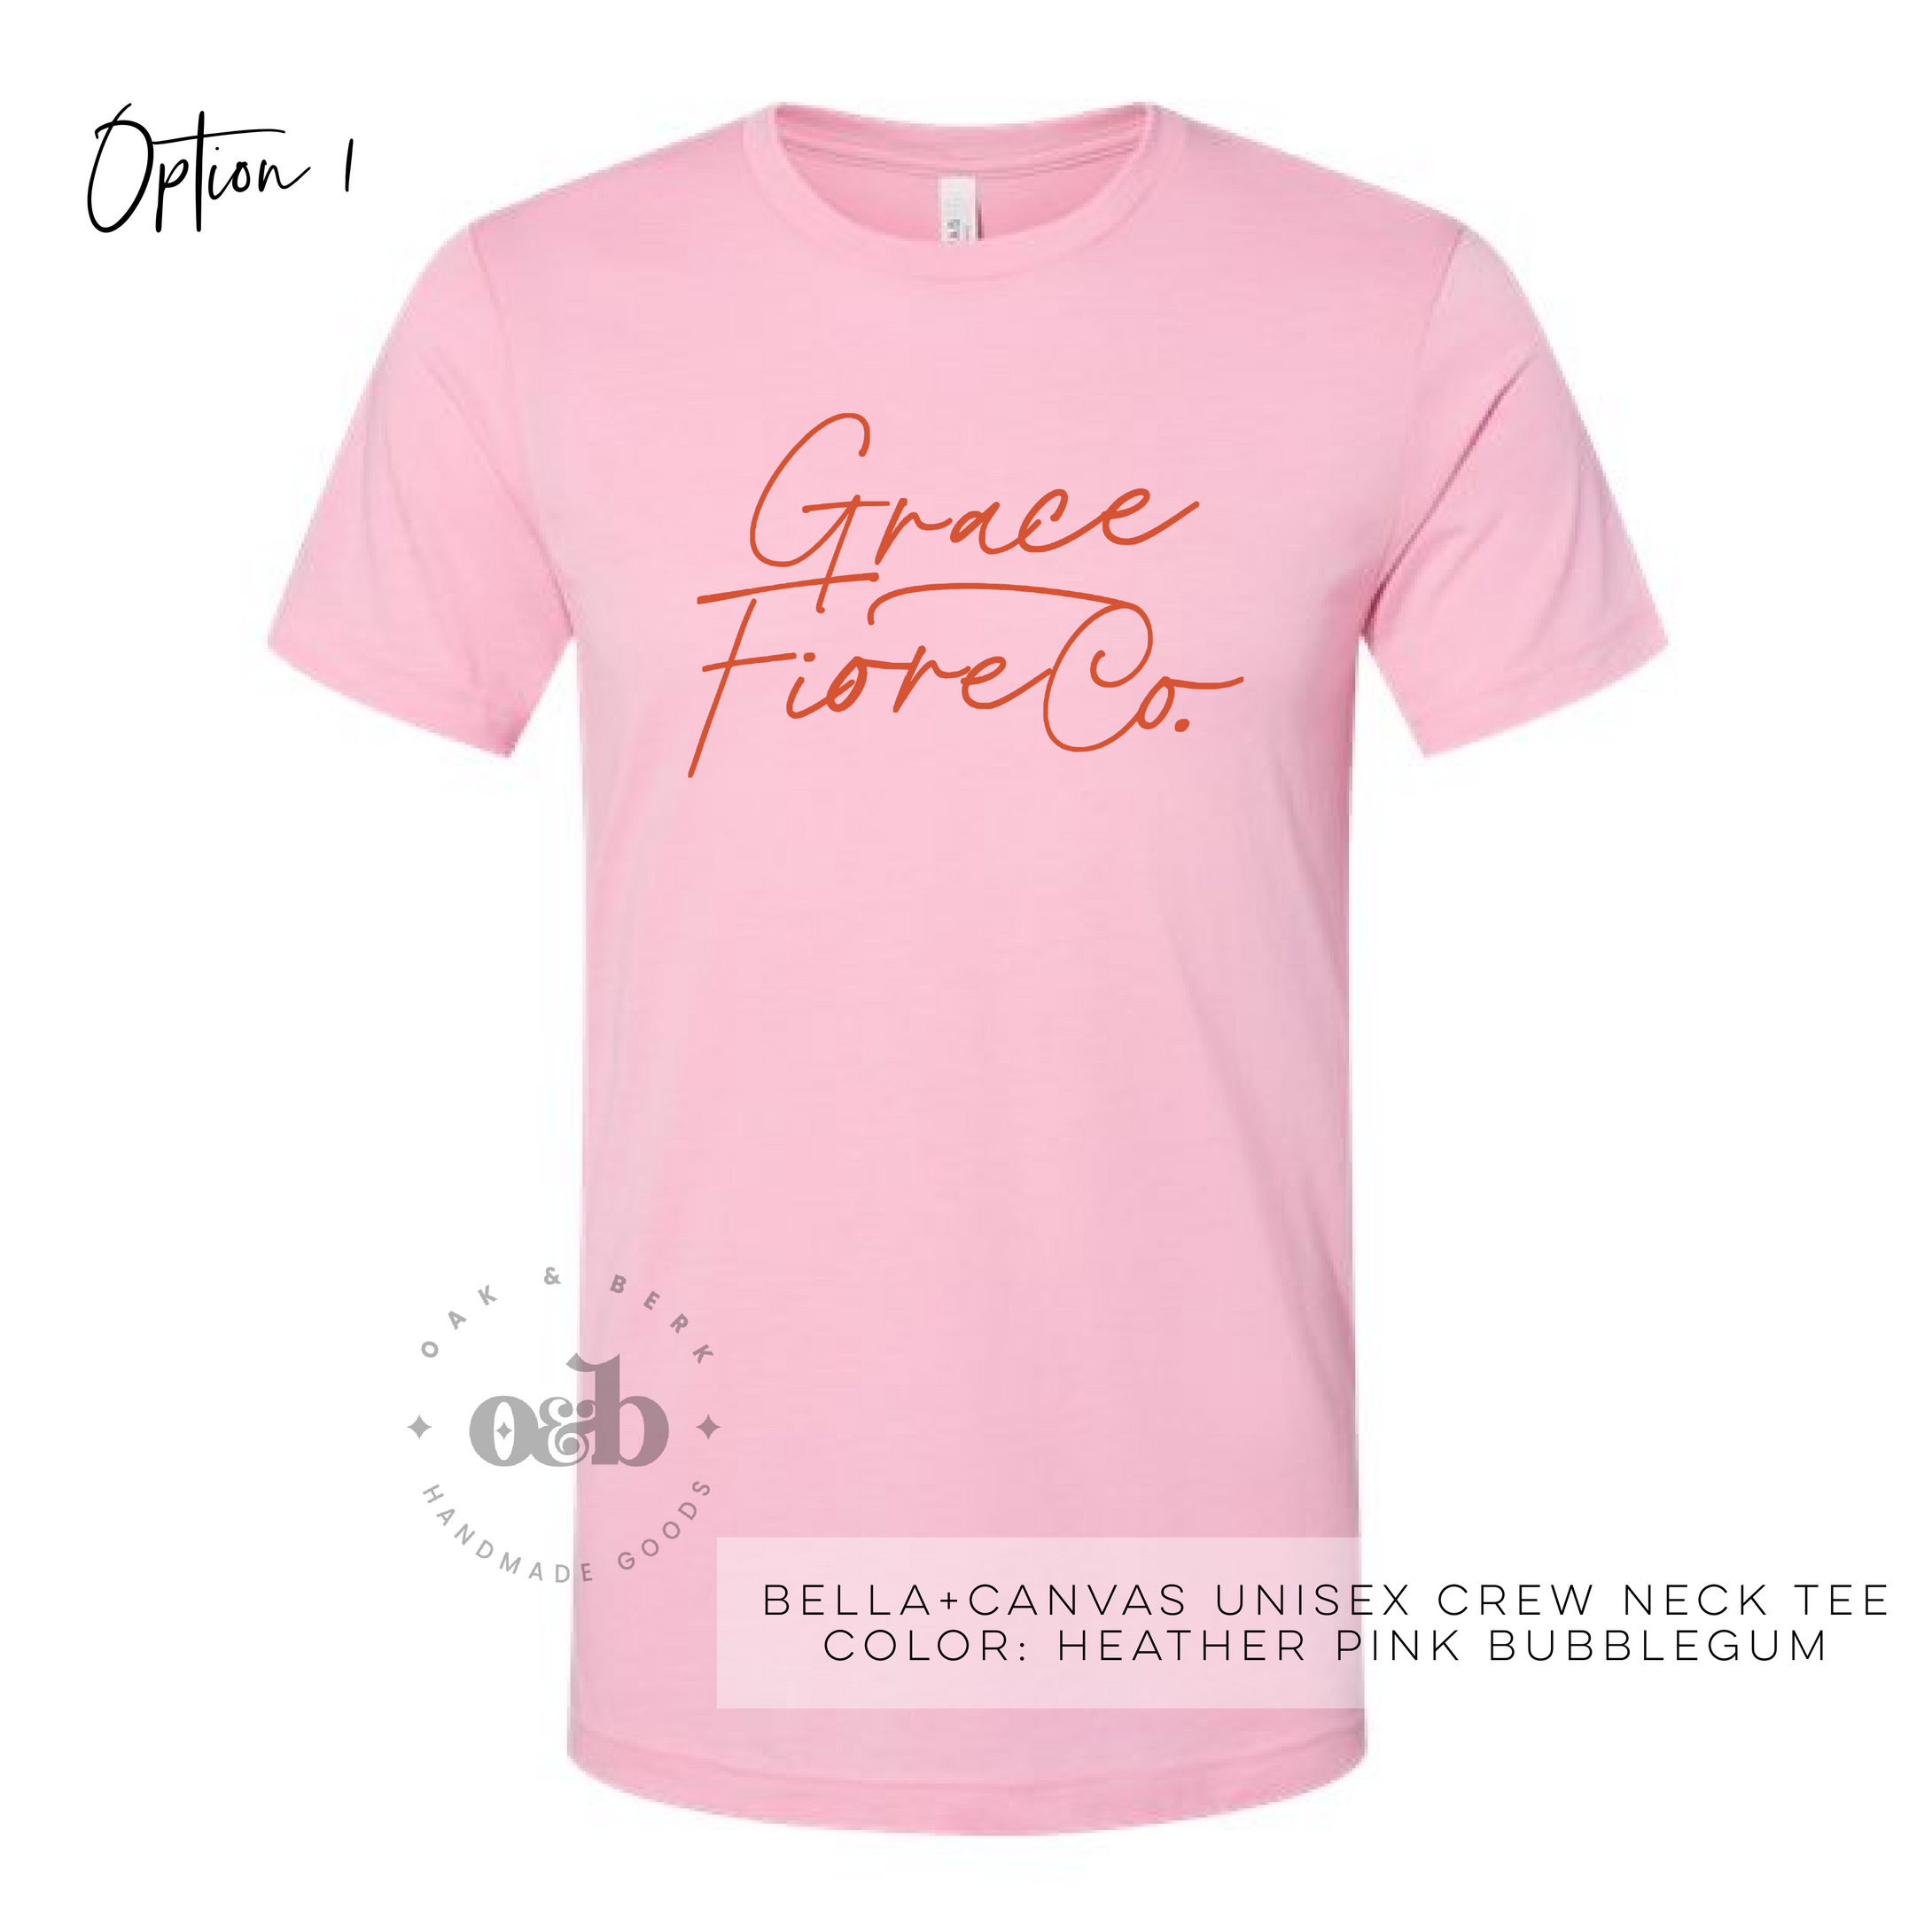 MTO / Grace Fiore Co